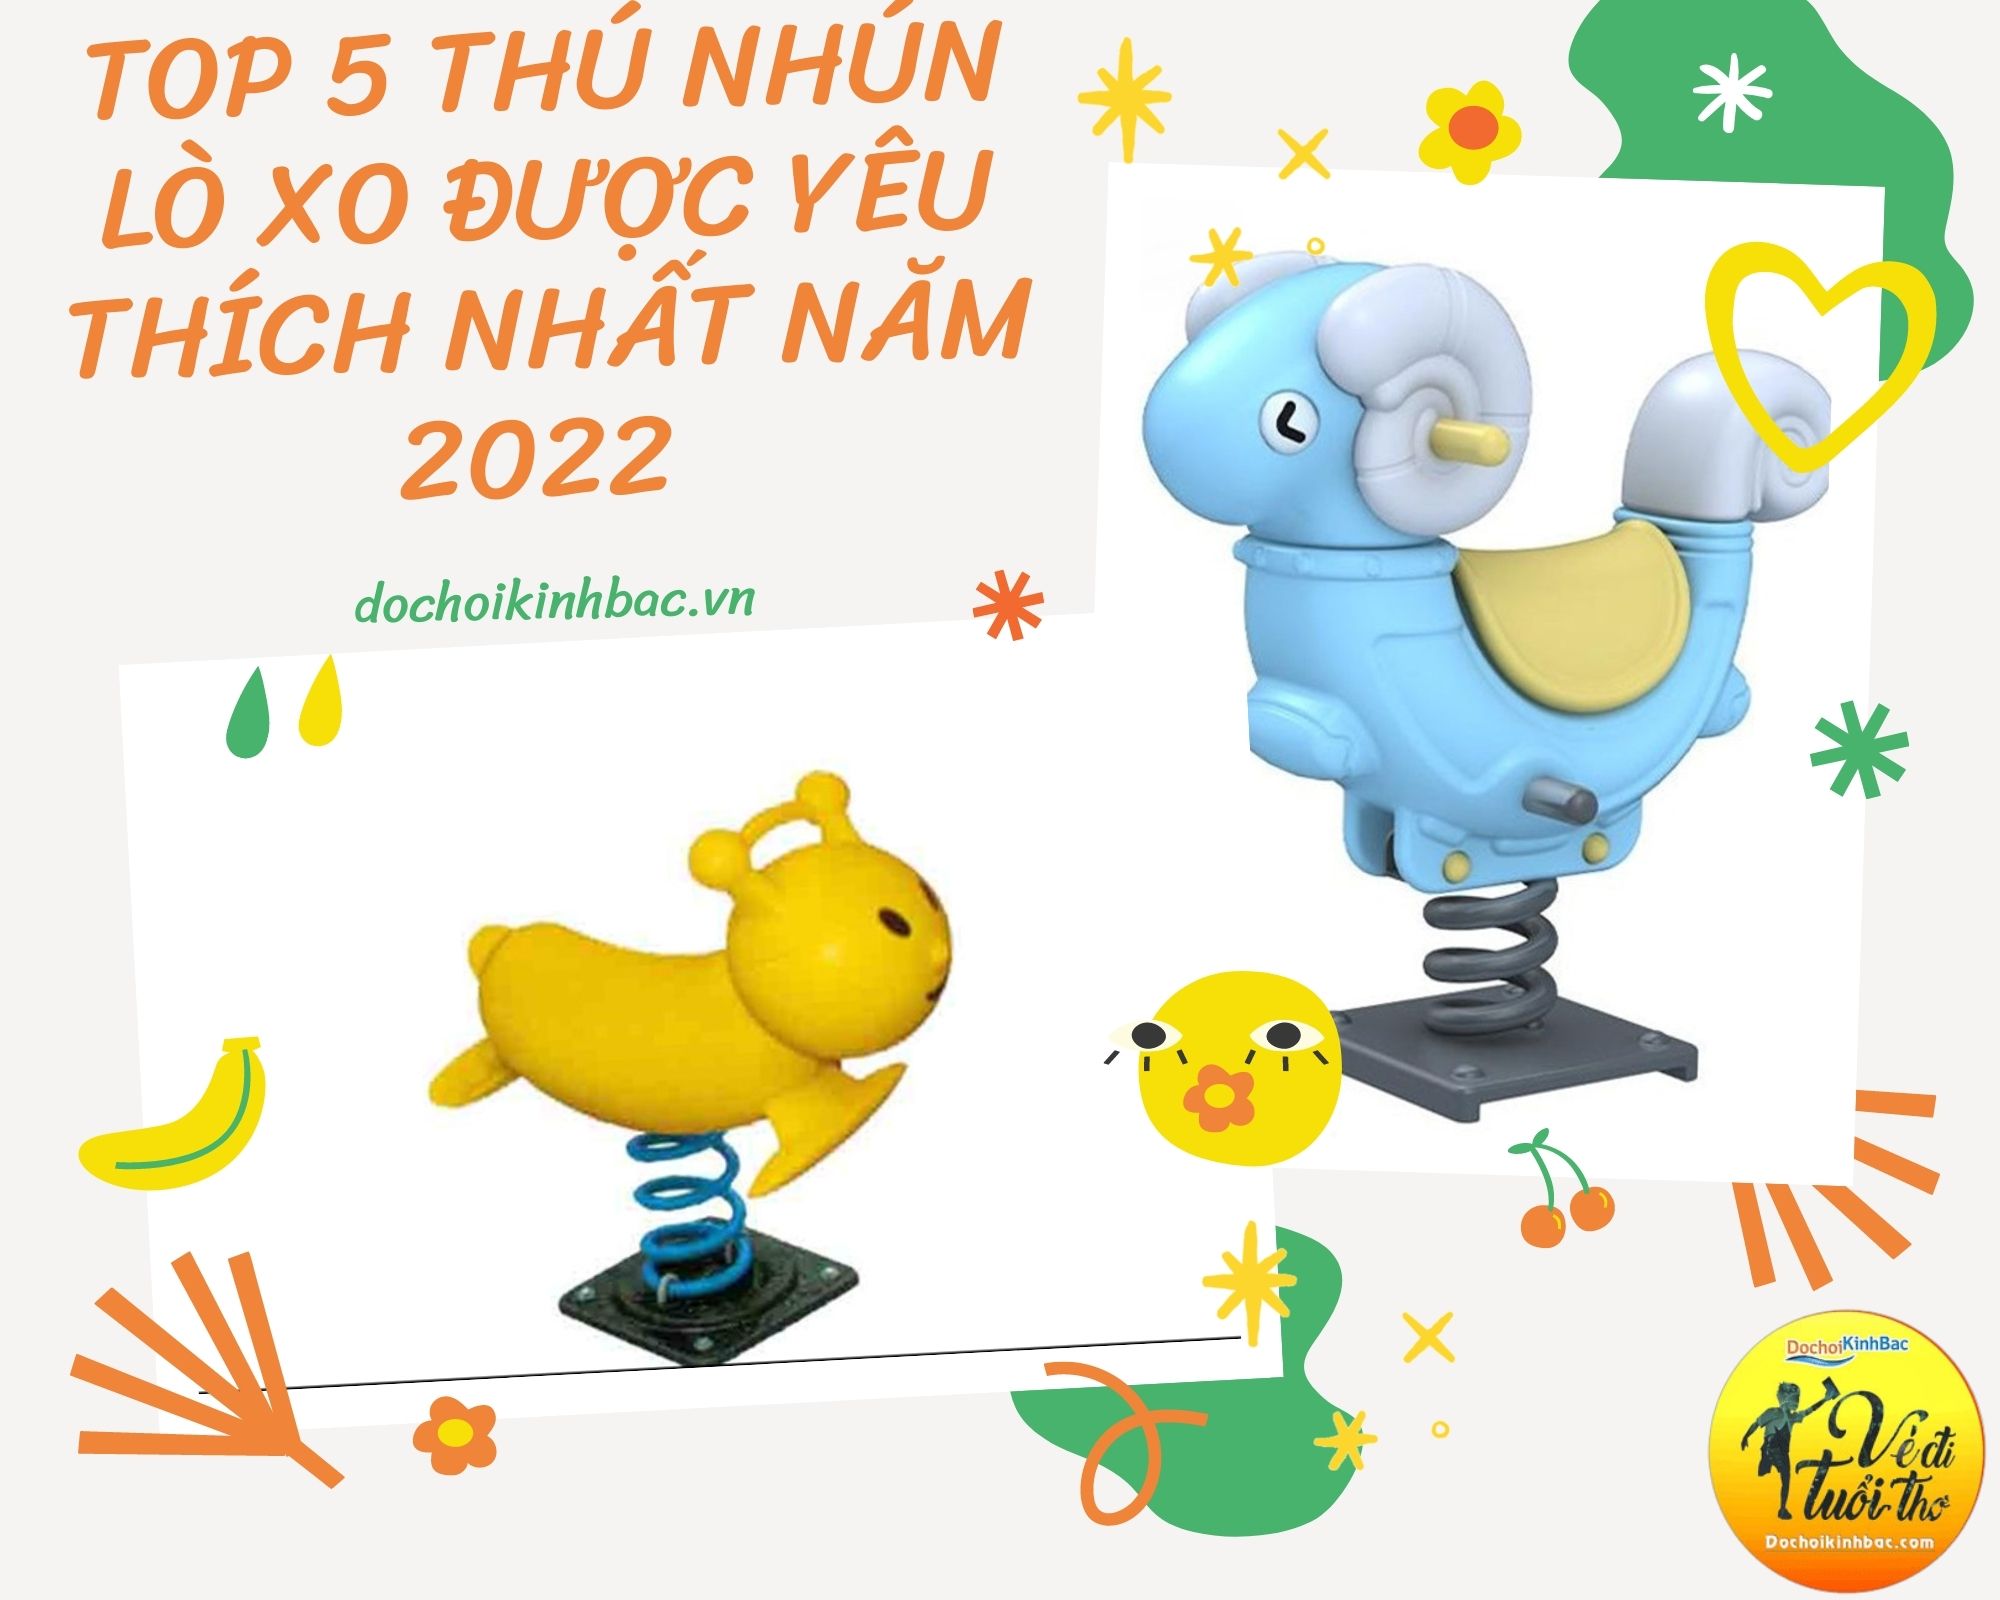 Top 5 Thú nhún lò xo được yêu thích nhất năm 2022 tại Dền Sáng, Bát Xát, Lào Cai